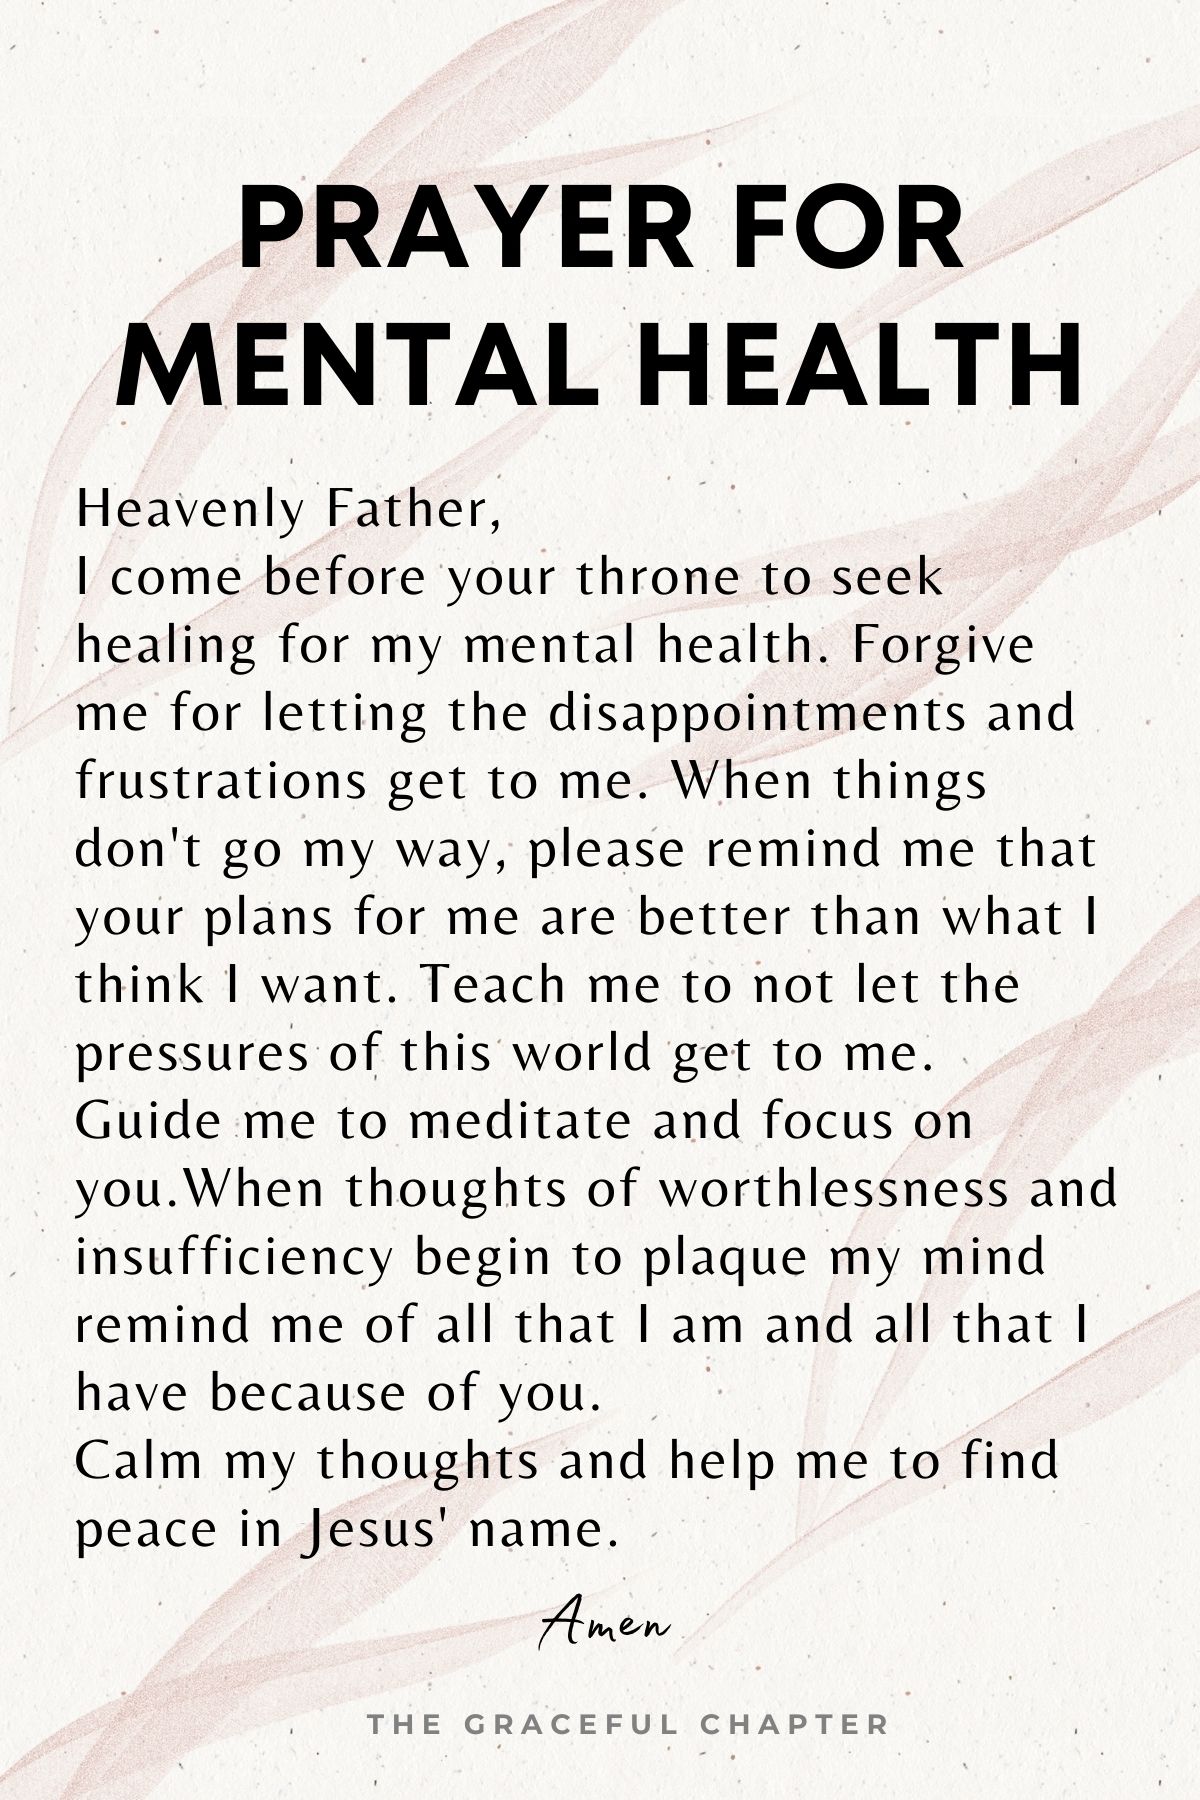 Prayer for mental health - prayers for healing